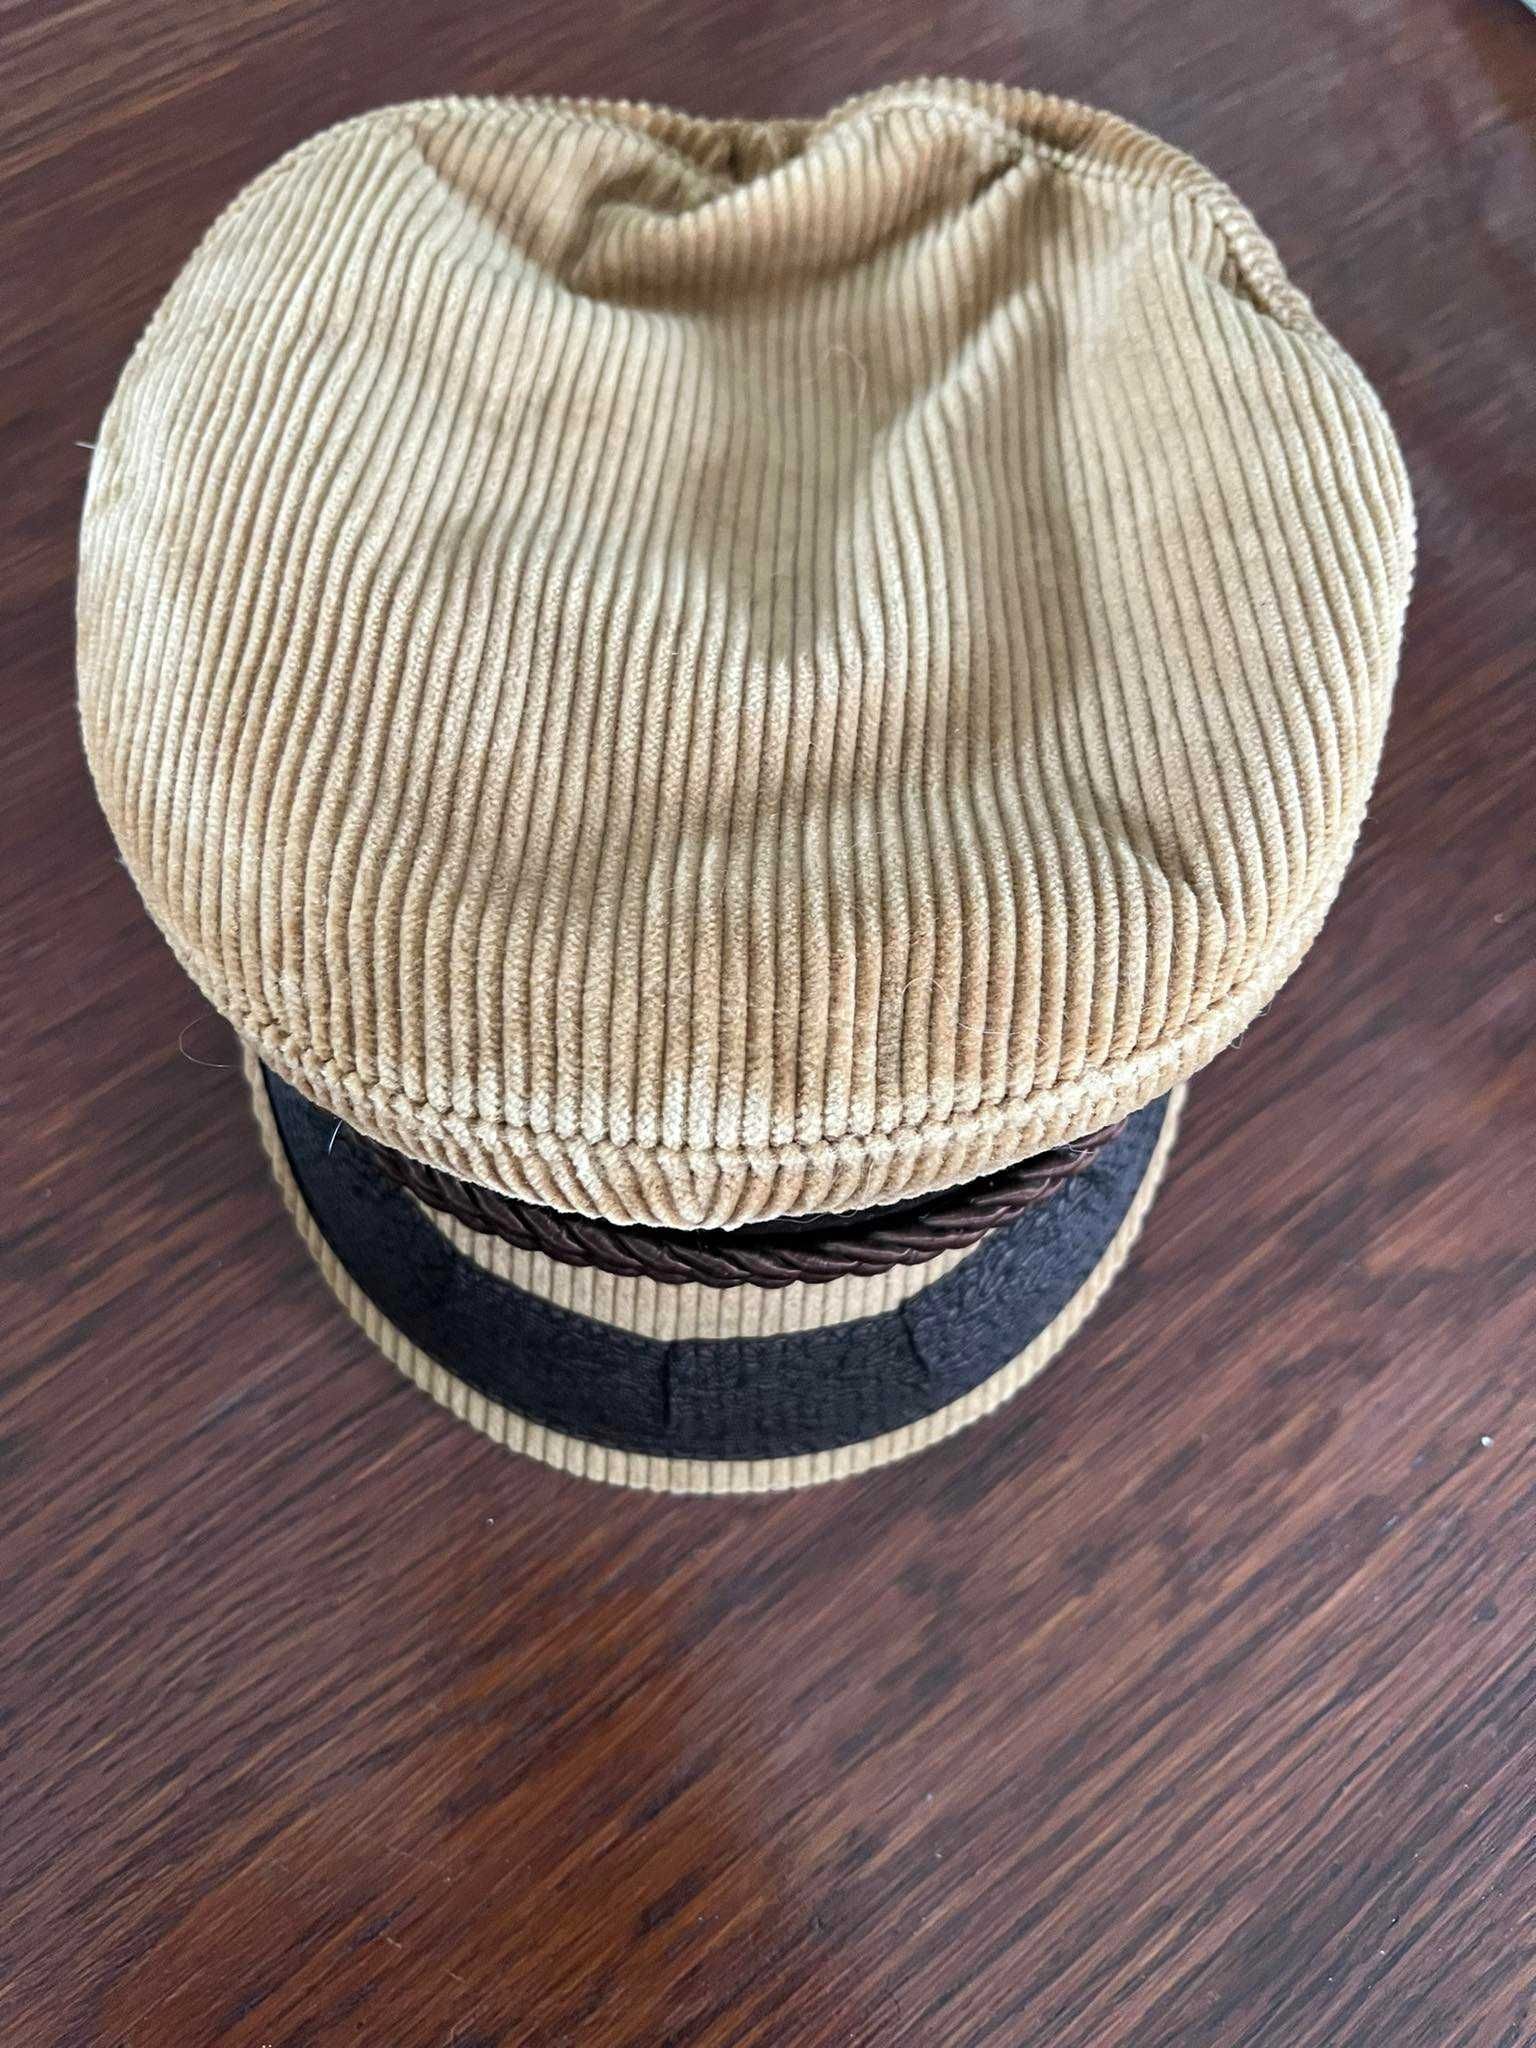 Stara niemiecka czapka żeglarska